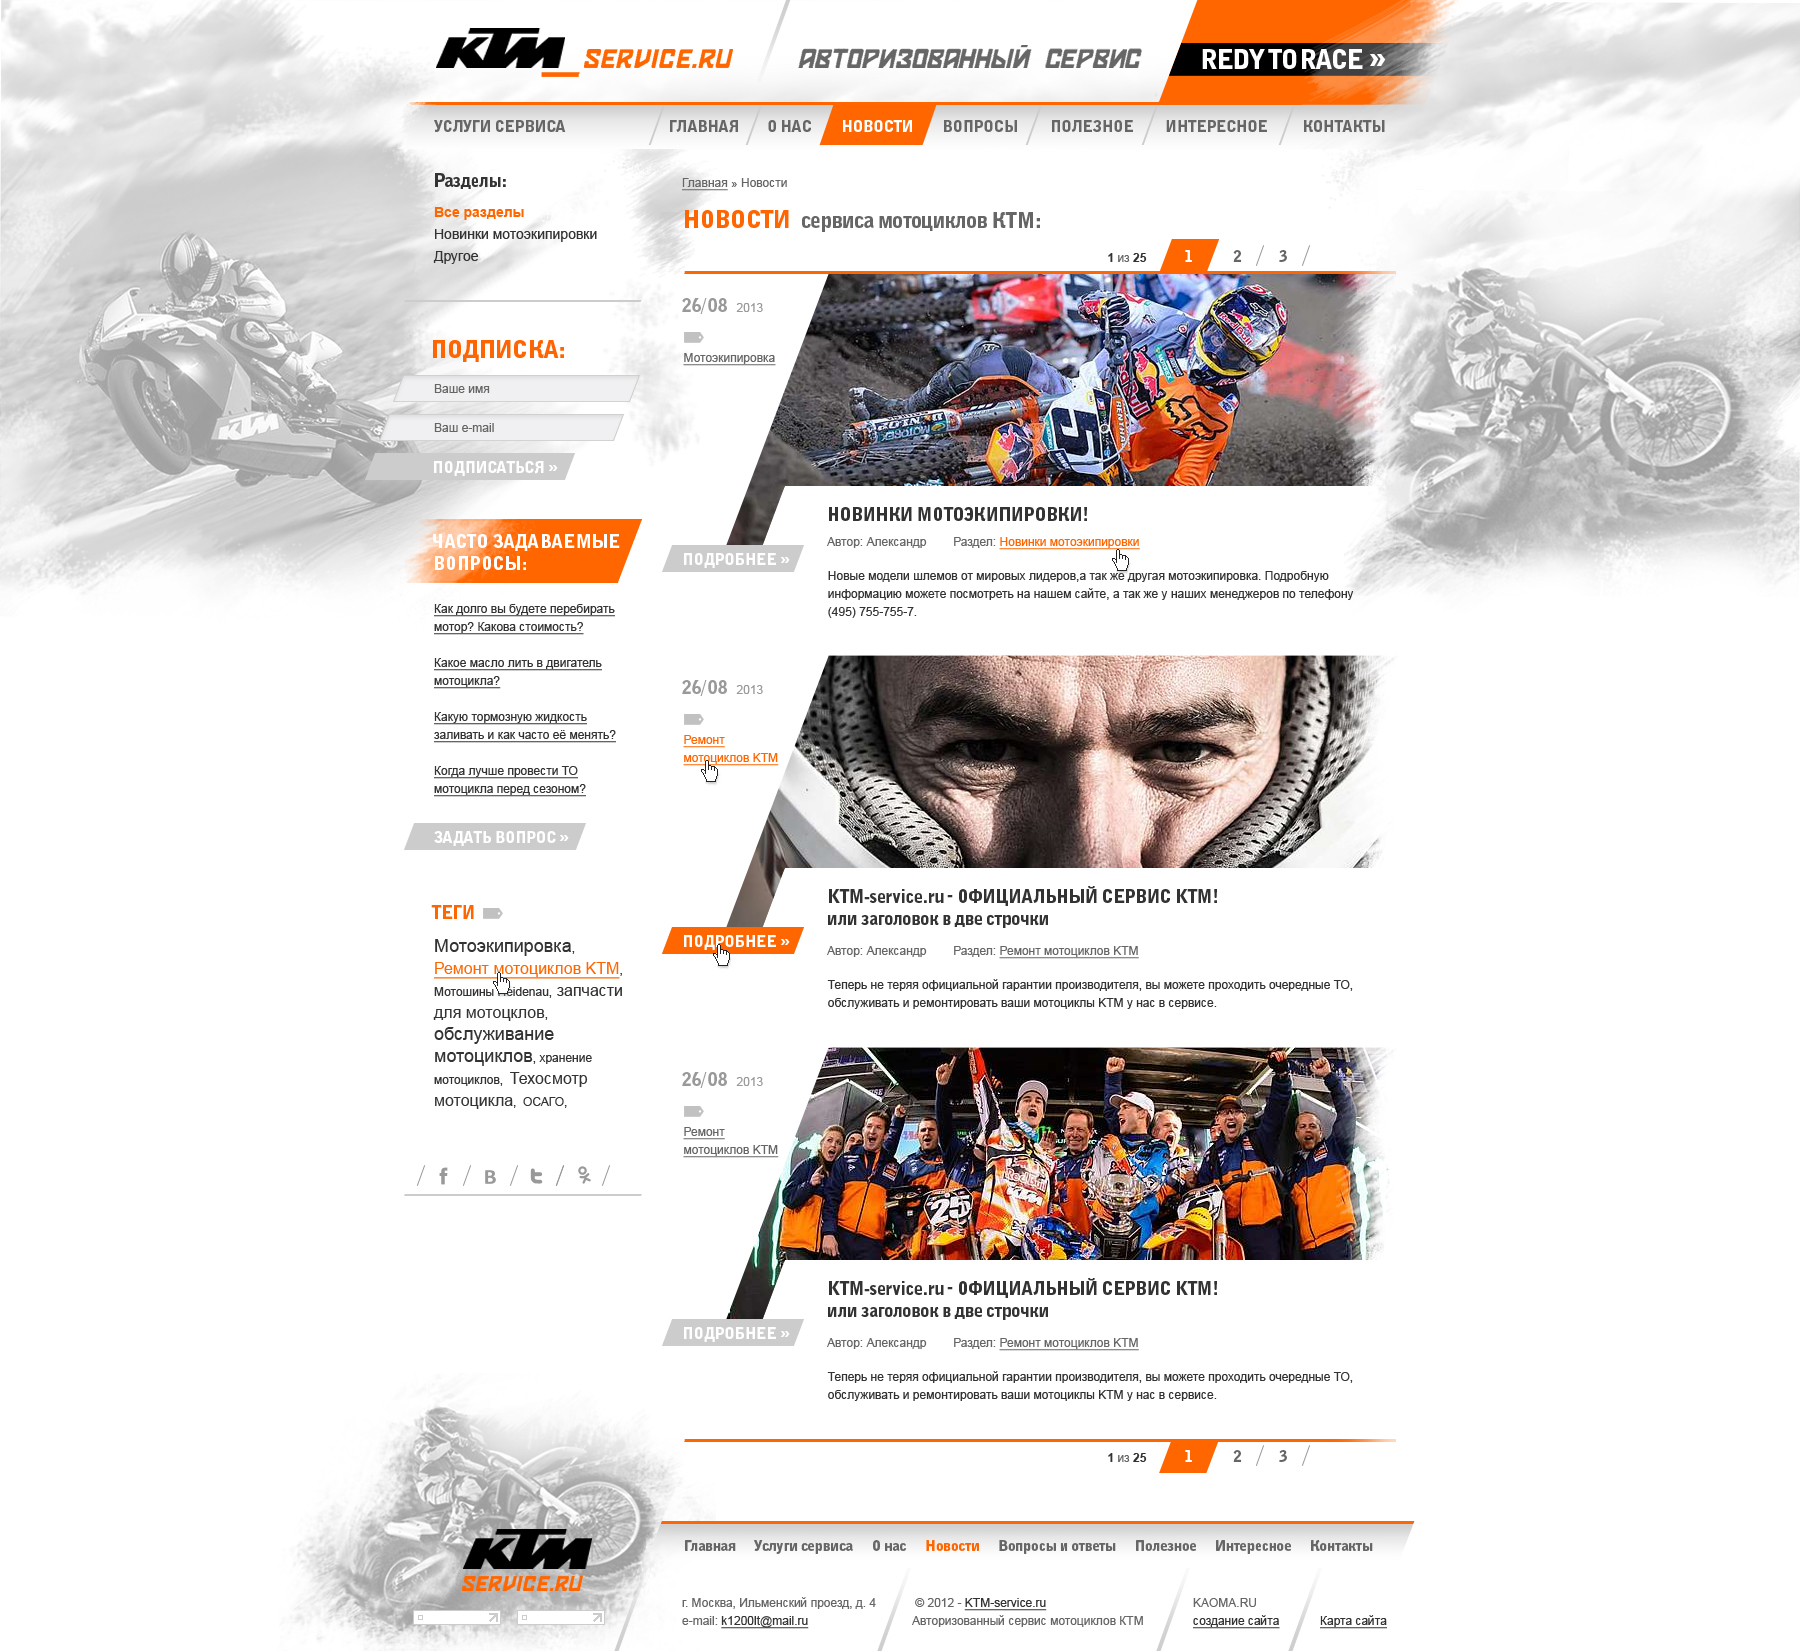 Создание сайта на 1С Битрикс KTM -service - страница публикаций